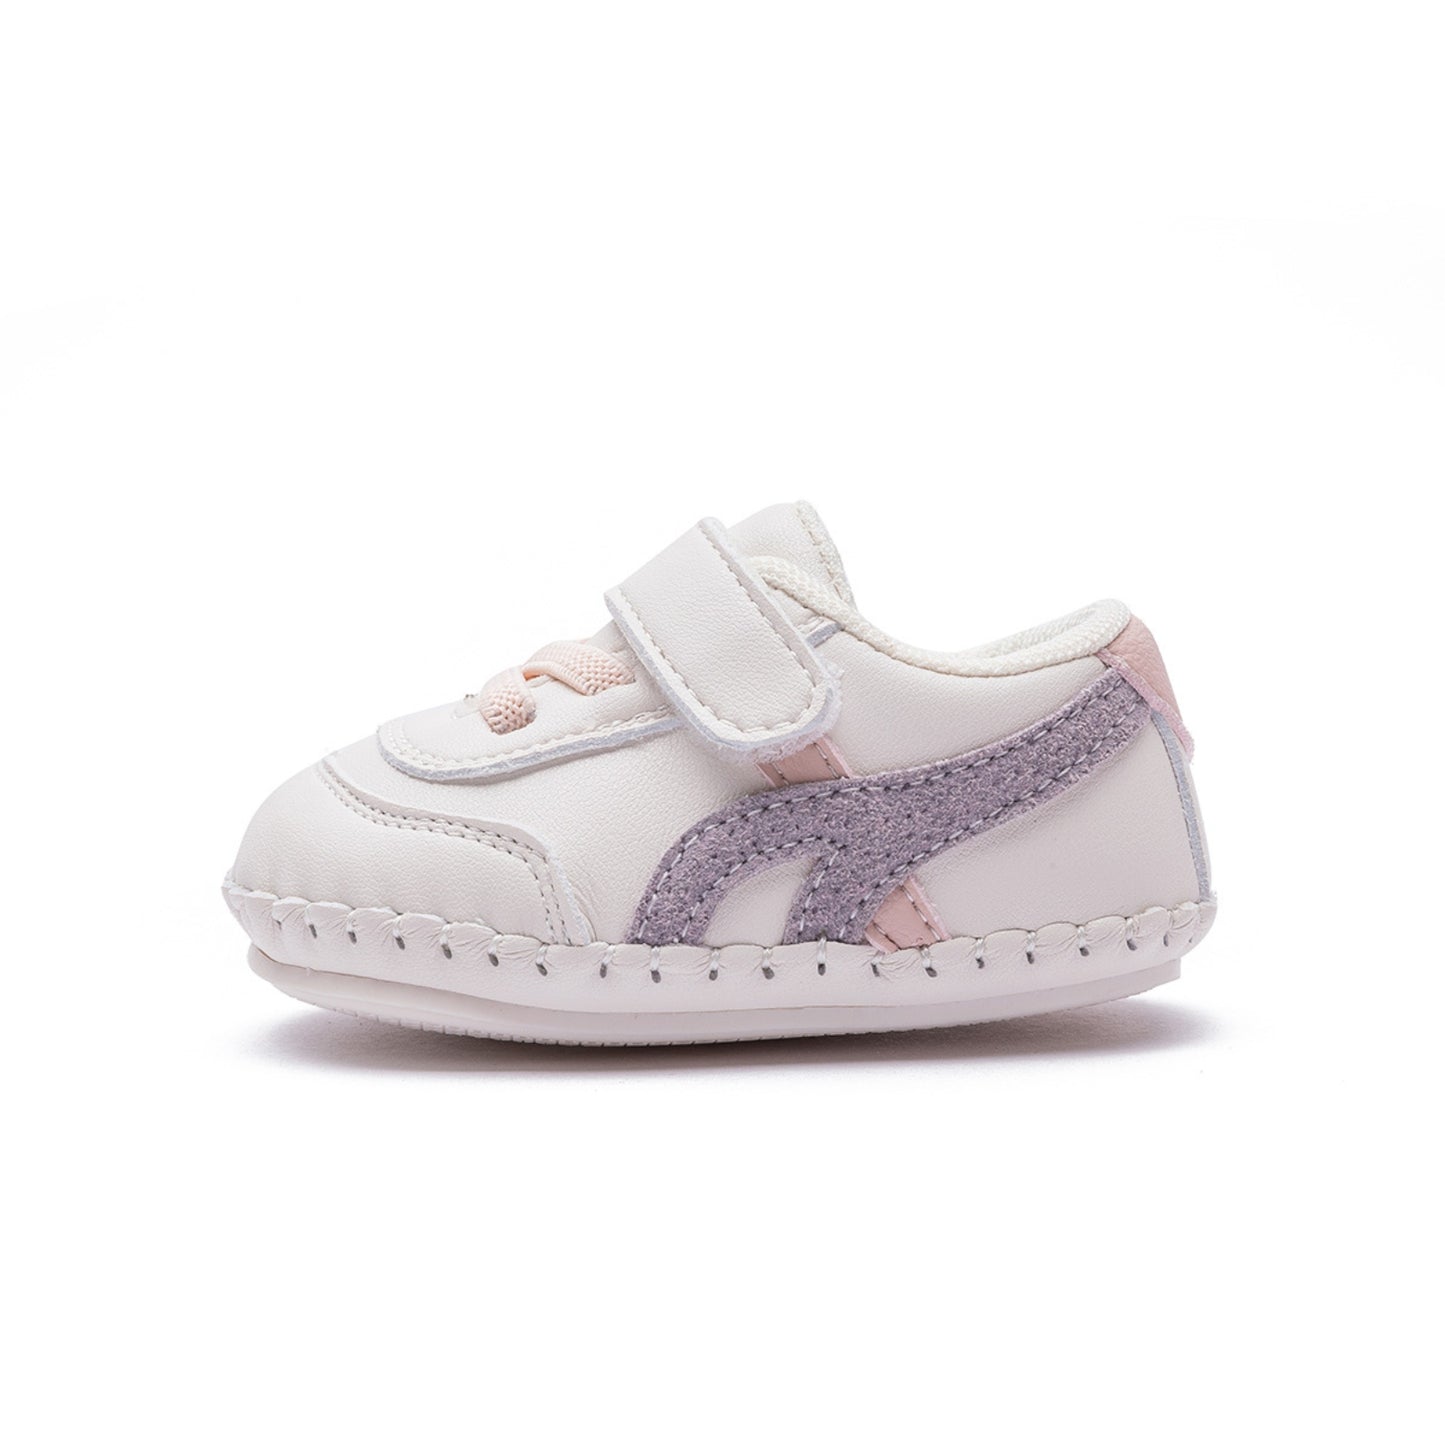 EBmini E3661 Soft-Soled Baby Sneaker (Purple)